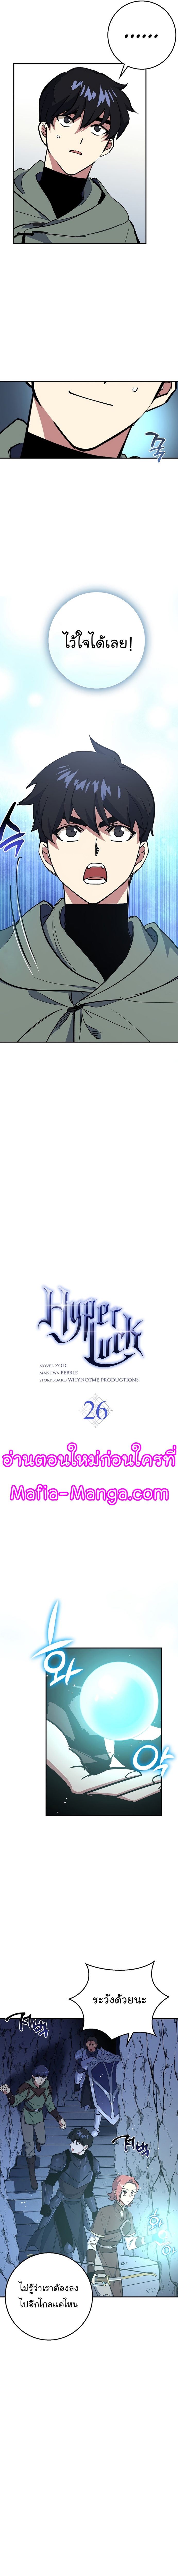 Hyper Luck ตอนที่26 (4)